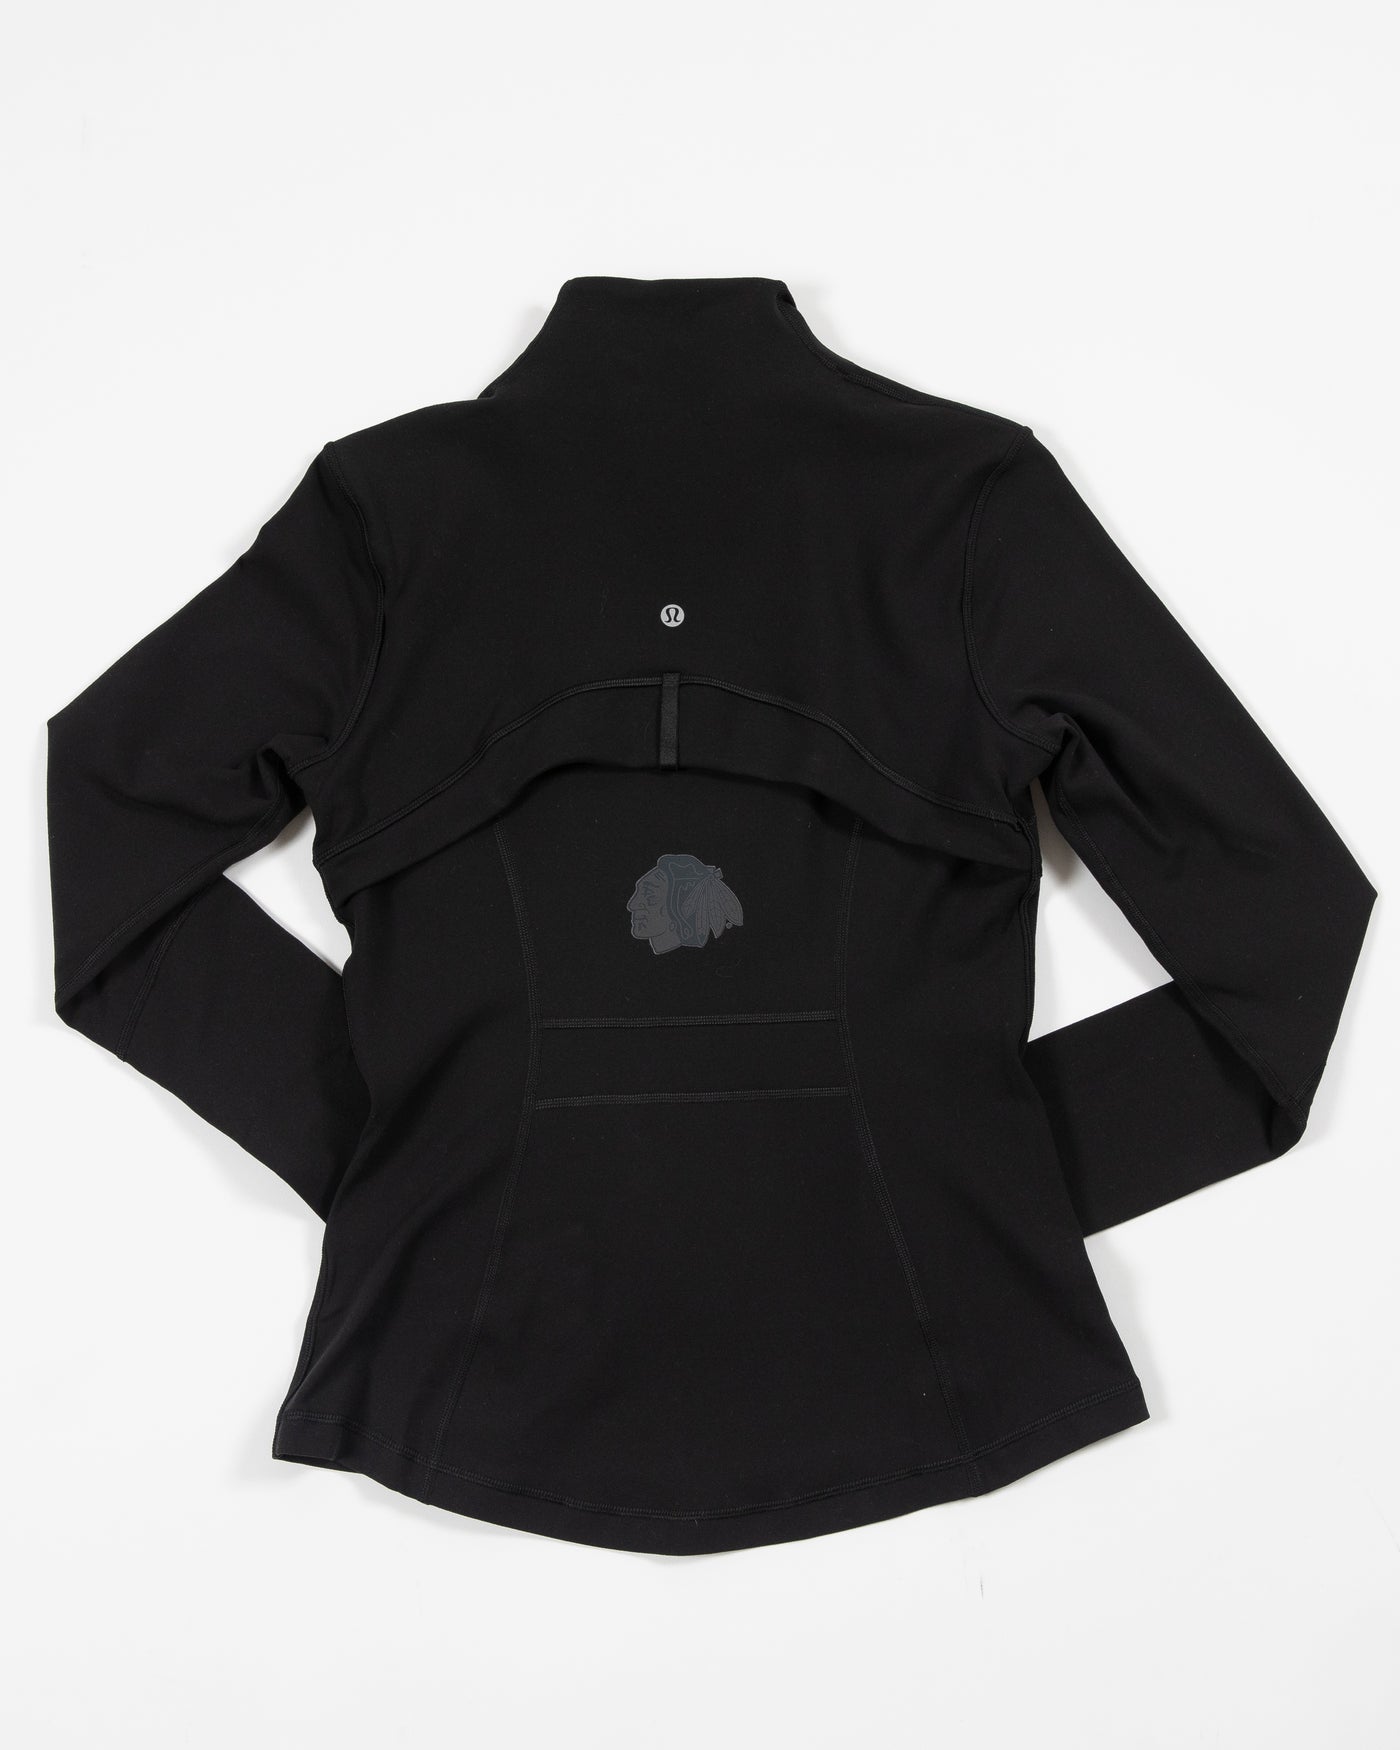 black define lululemon workout zip up jacket with tonal primary logo - back lay flat